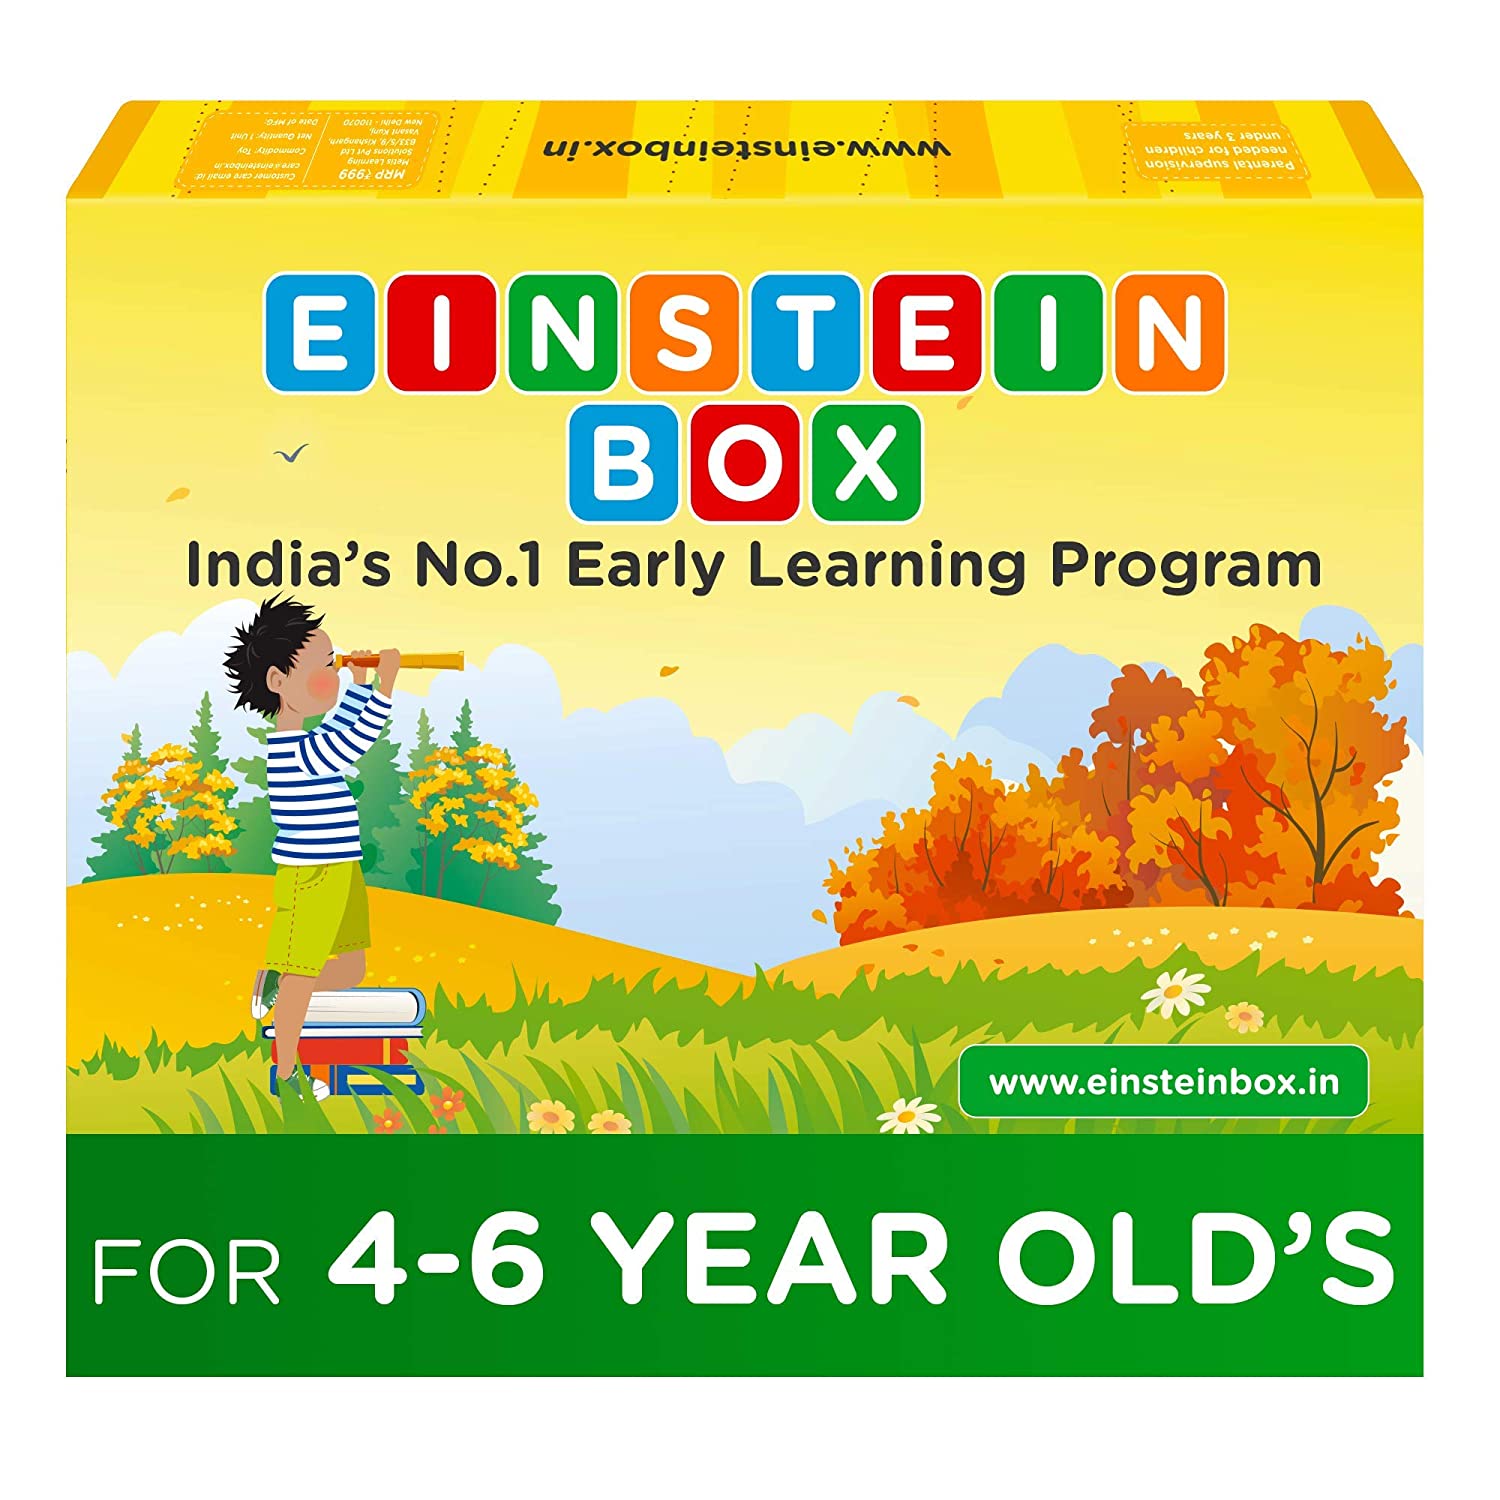 activity box for kids - Einstein Box